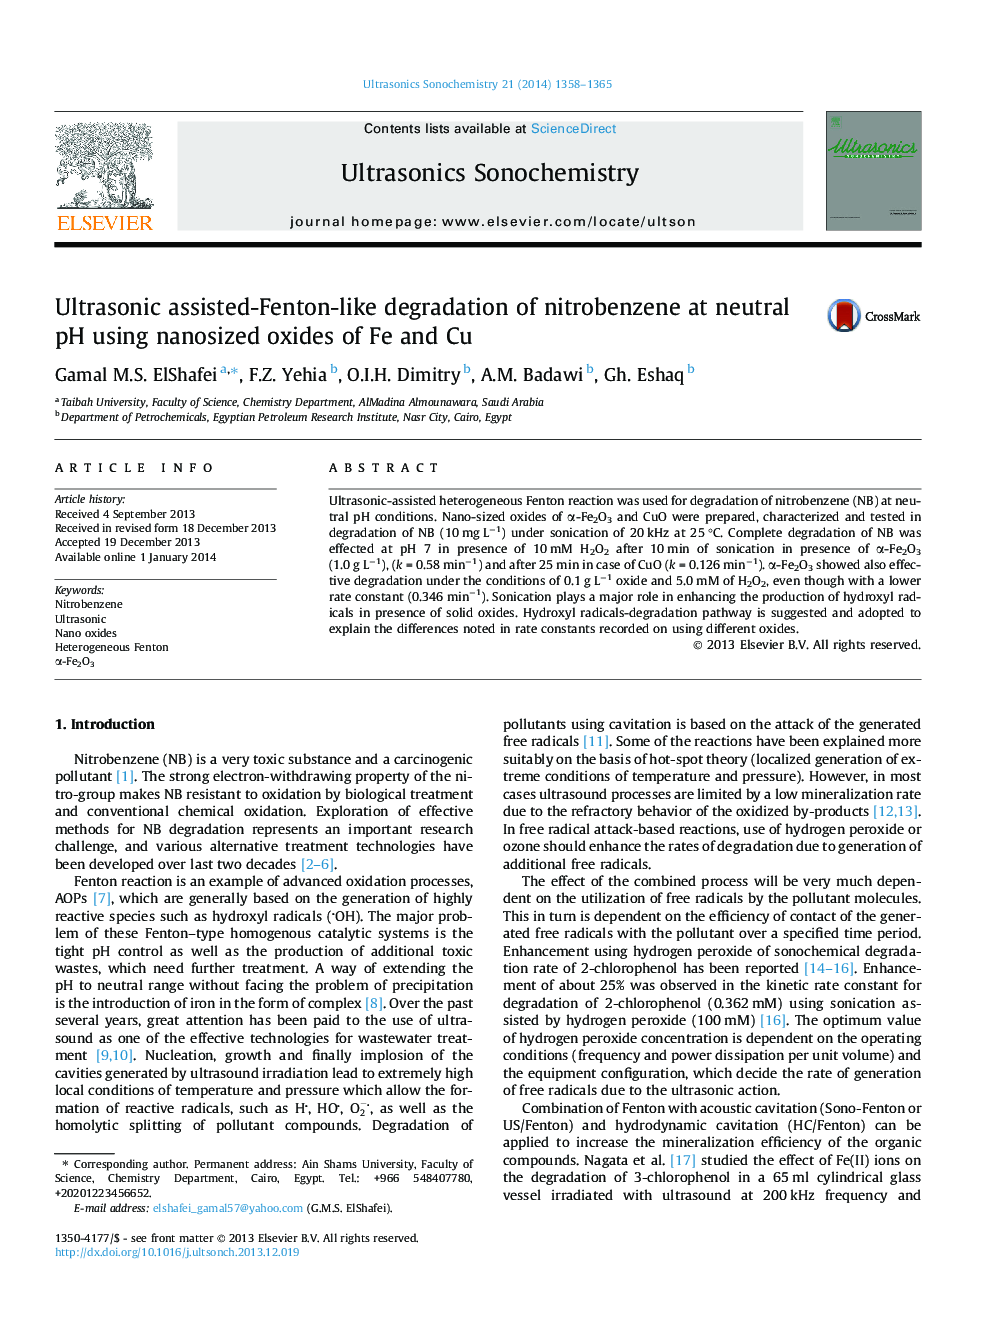 Ultrasonic assisted-Fenton-like degradation of nitrobenzene at neutral pH using nanosized oxides of Fe and Cu